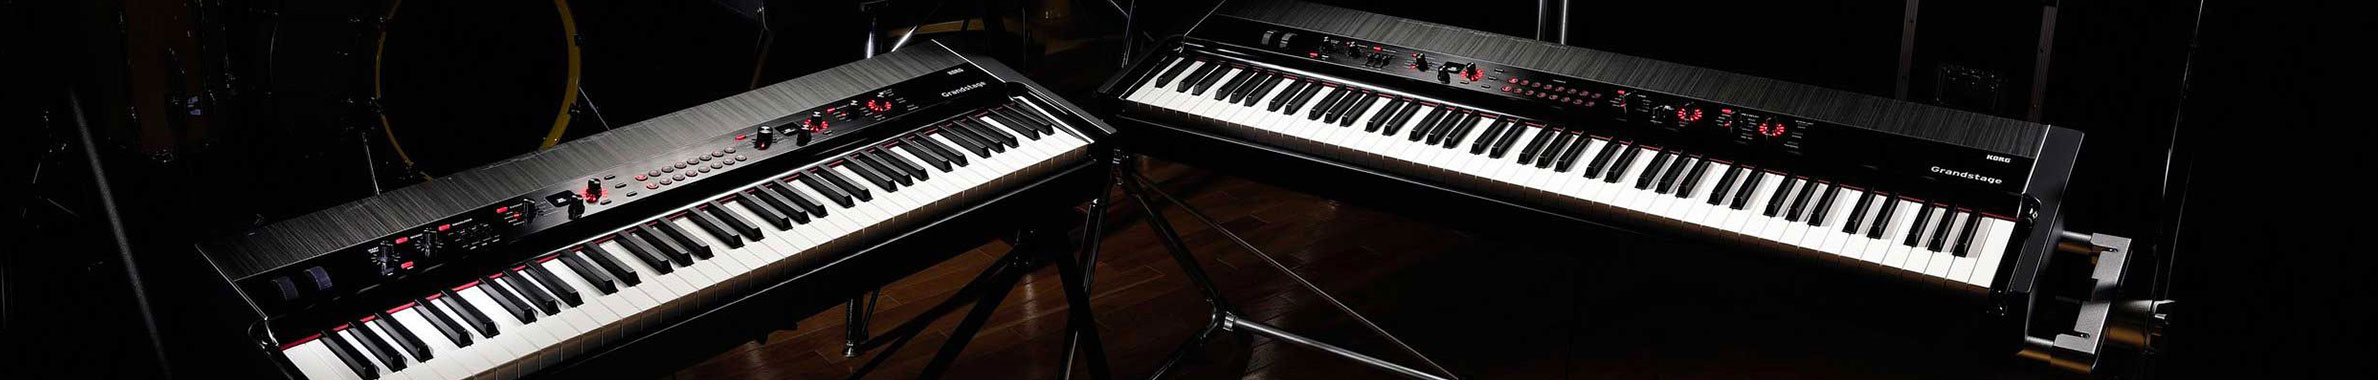 Comment bien choisir son piano numérique ou synthétiseur ?